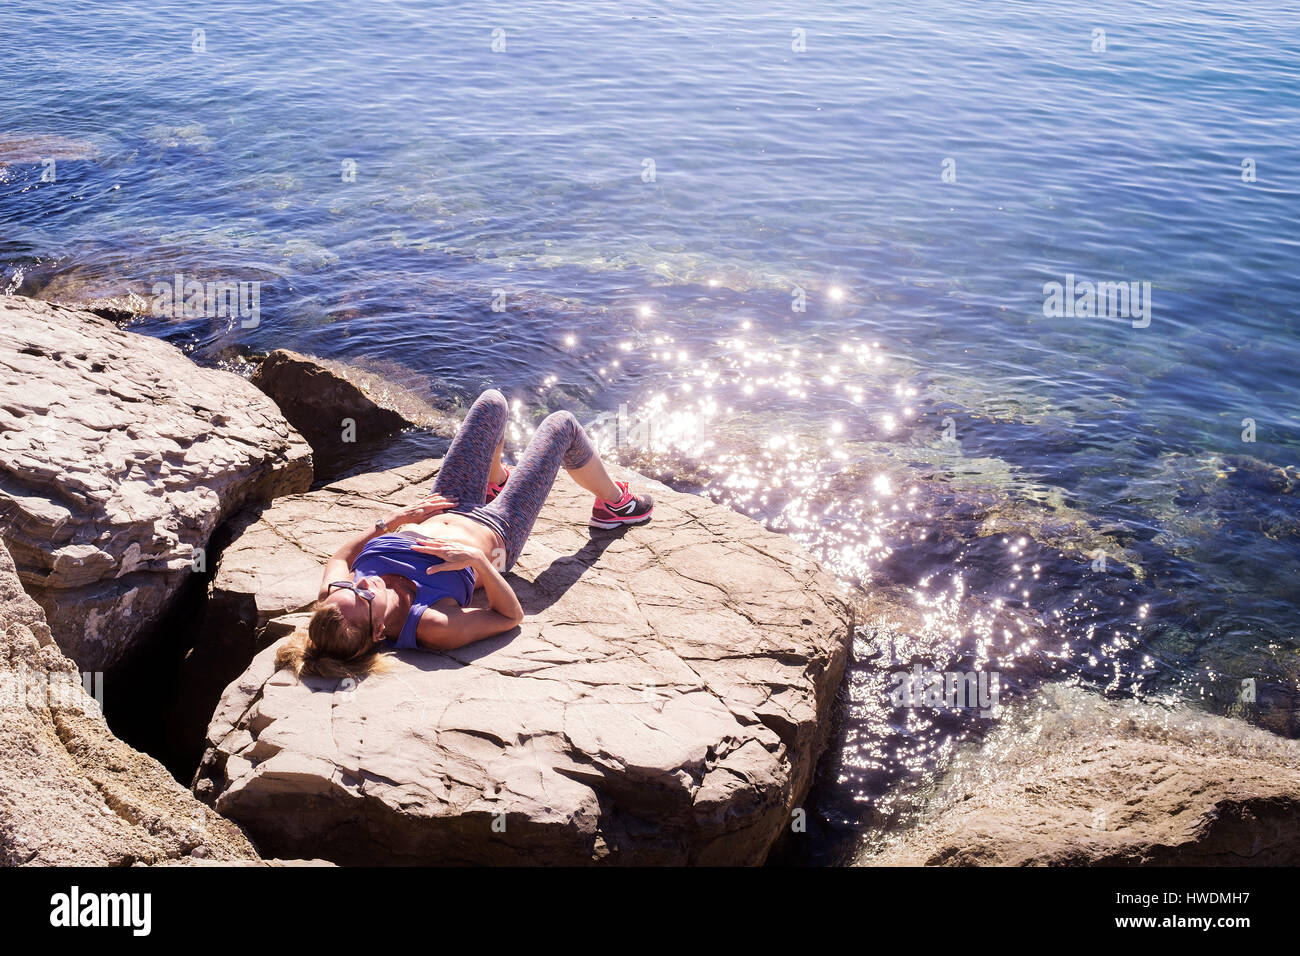 Woman sunbathing on rocks by sea Stock Photo